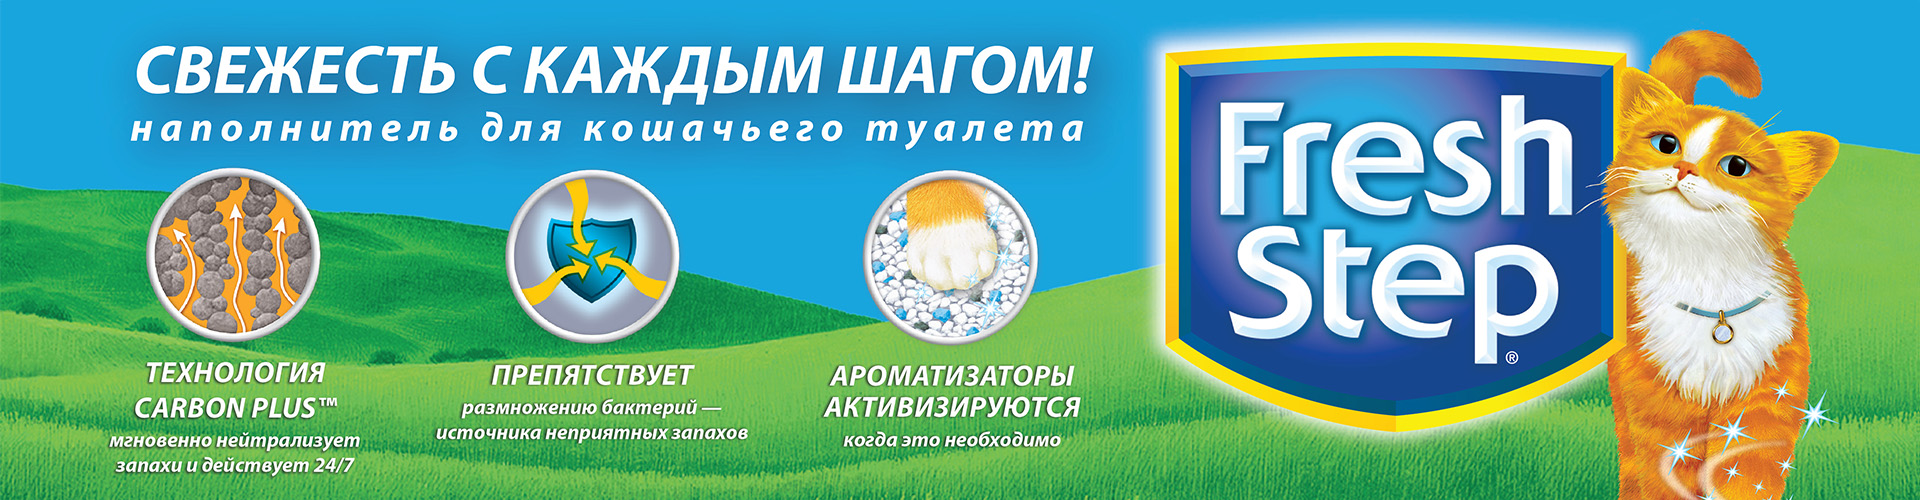 купить Наполнители для кошачьего туалета Fresh Step (Фреш Степ, США) с бесплатной доставкой в Калининграде